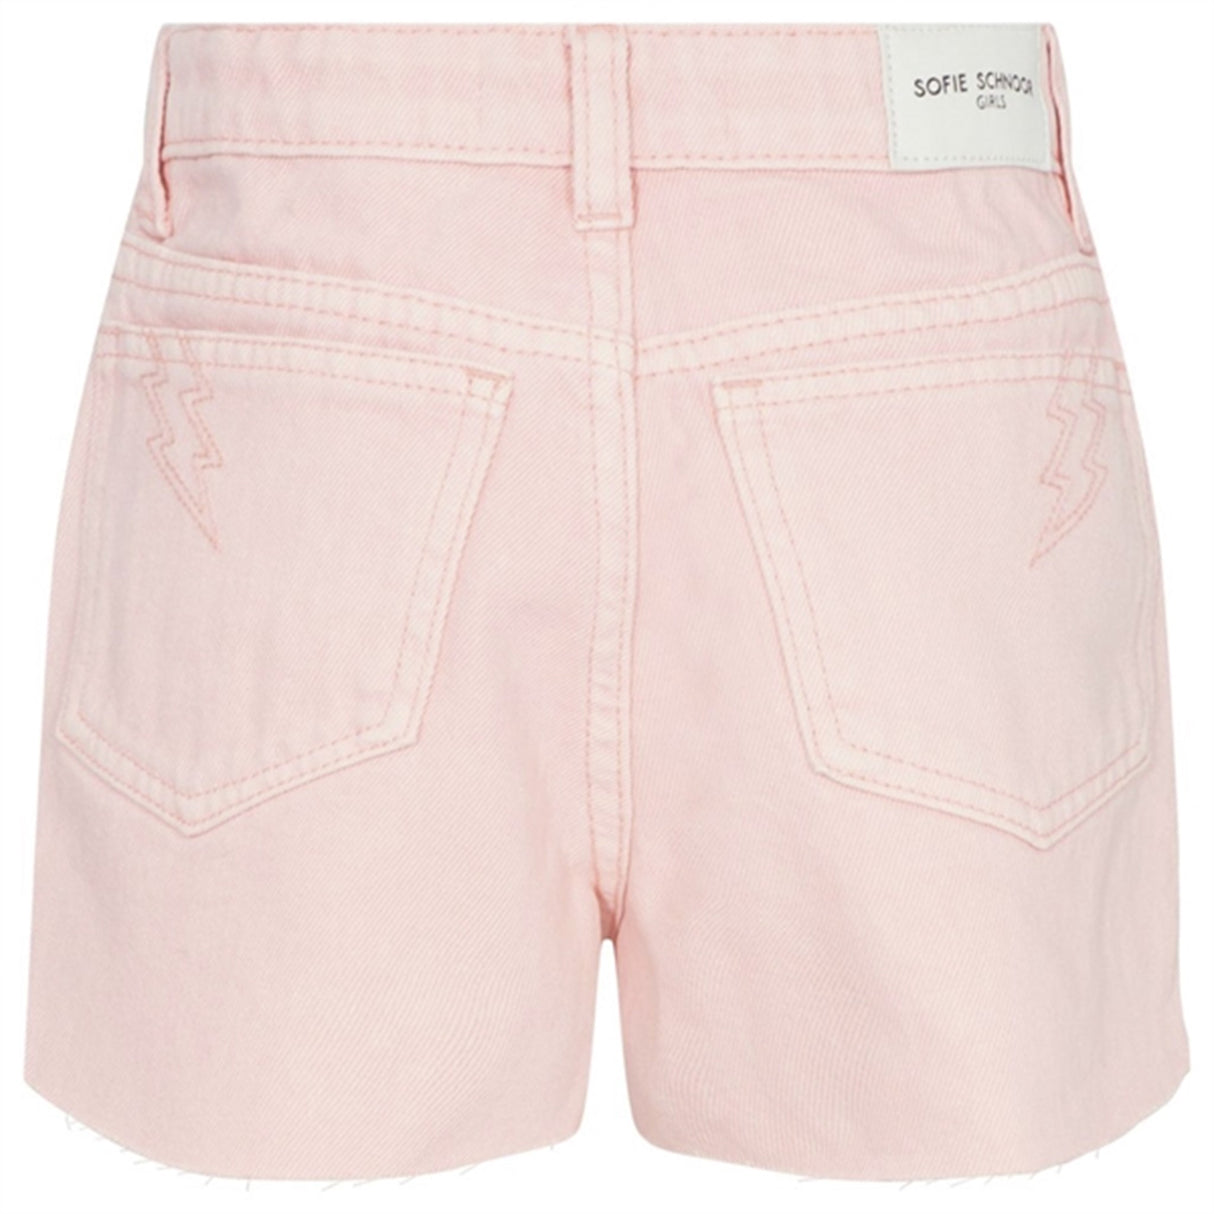 Sofie Schnoor Light Pink Denim Shorts 6